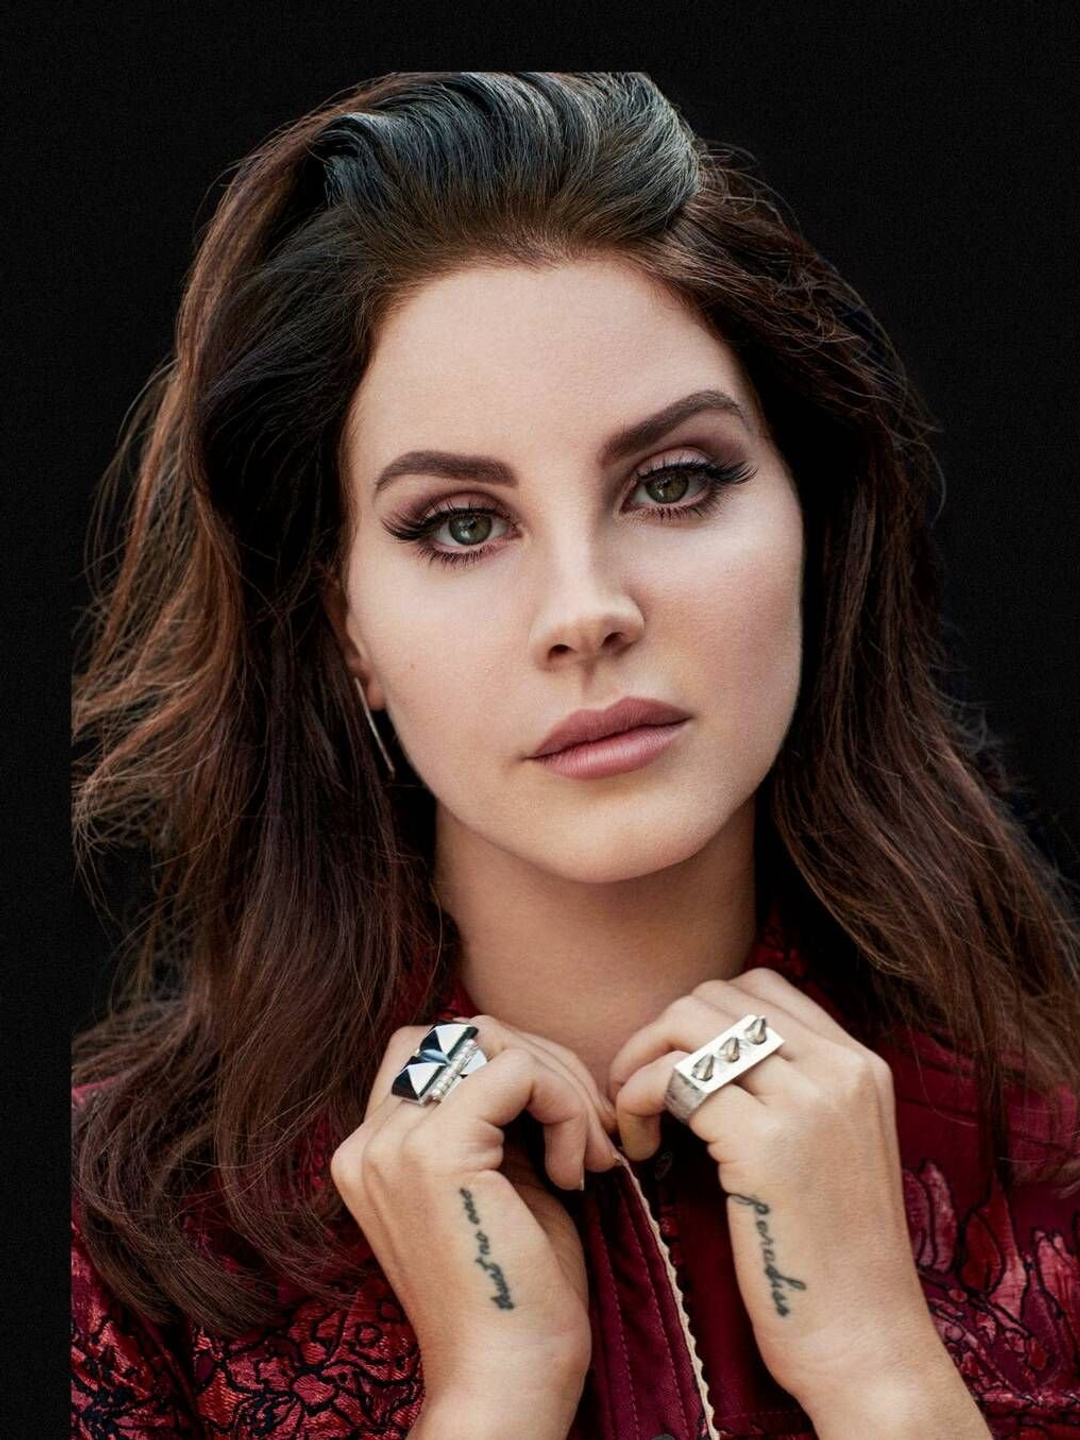 Lana Del Rey age